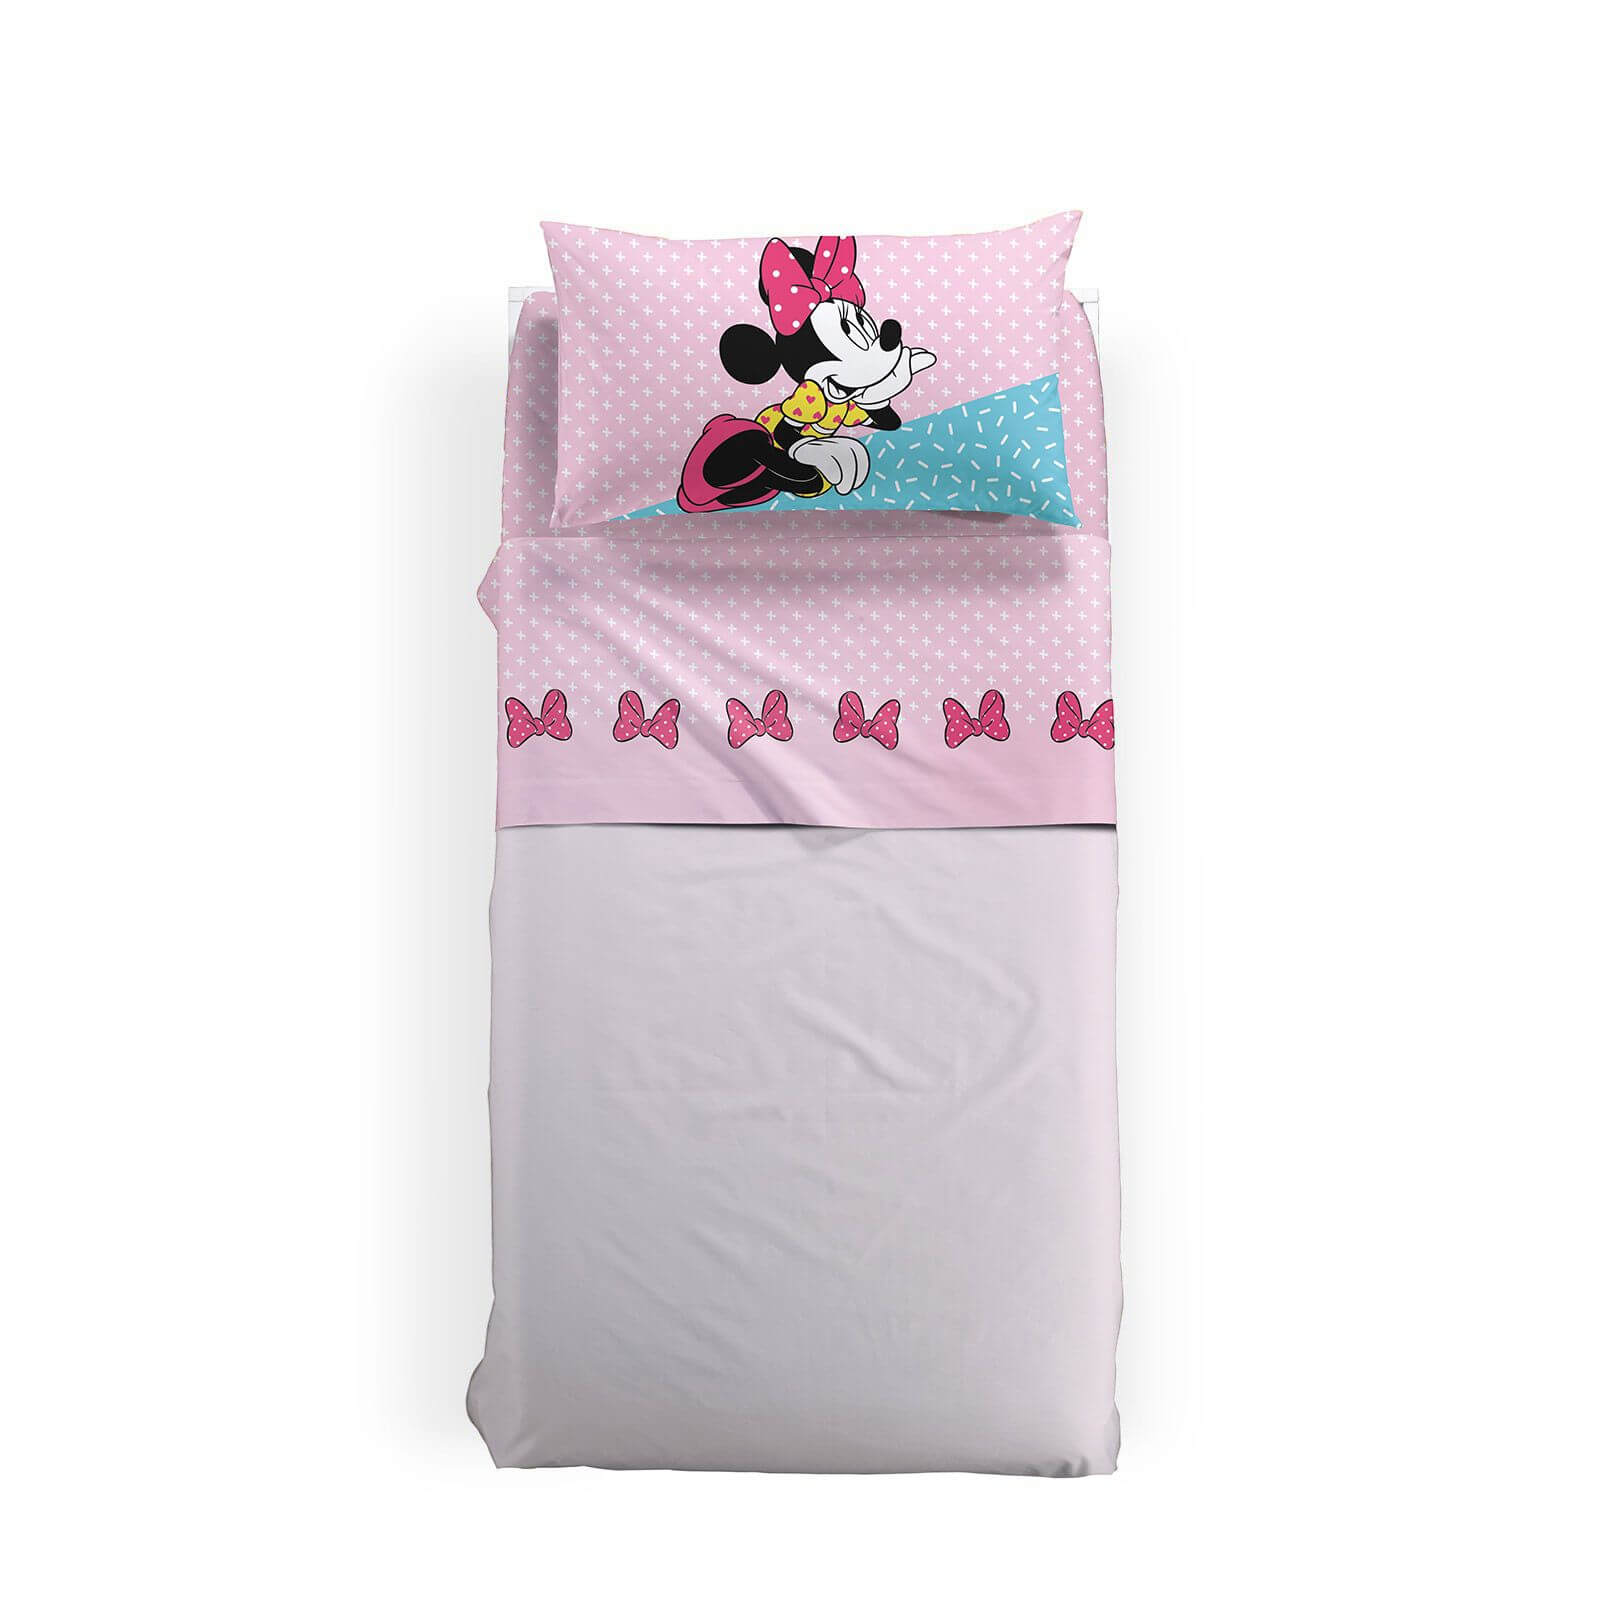 Completo lenzuola Minnie Pink in puro cotone per letto singolo. Linea Caleffi Disney. Fantasia fondo rosa.